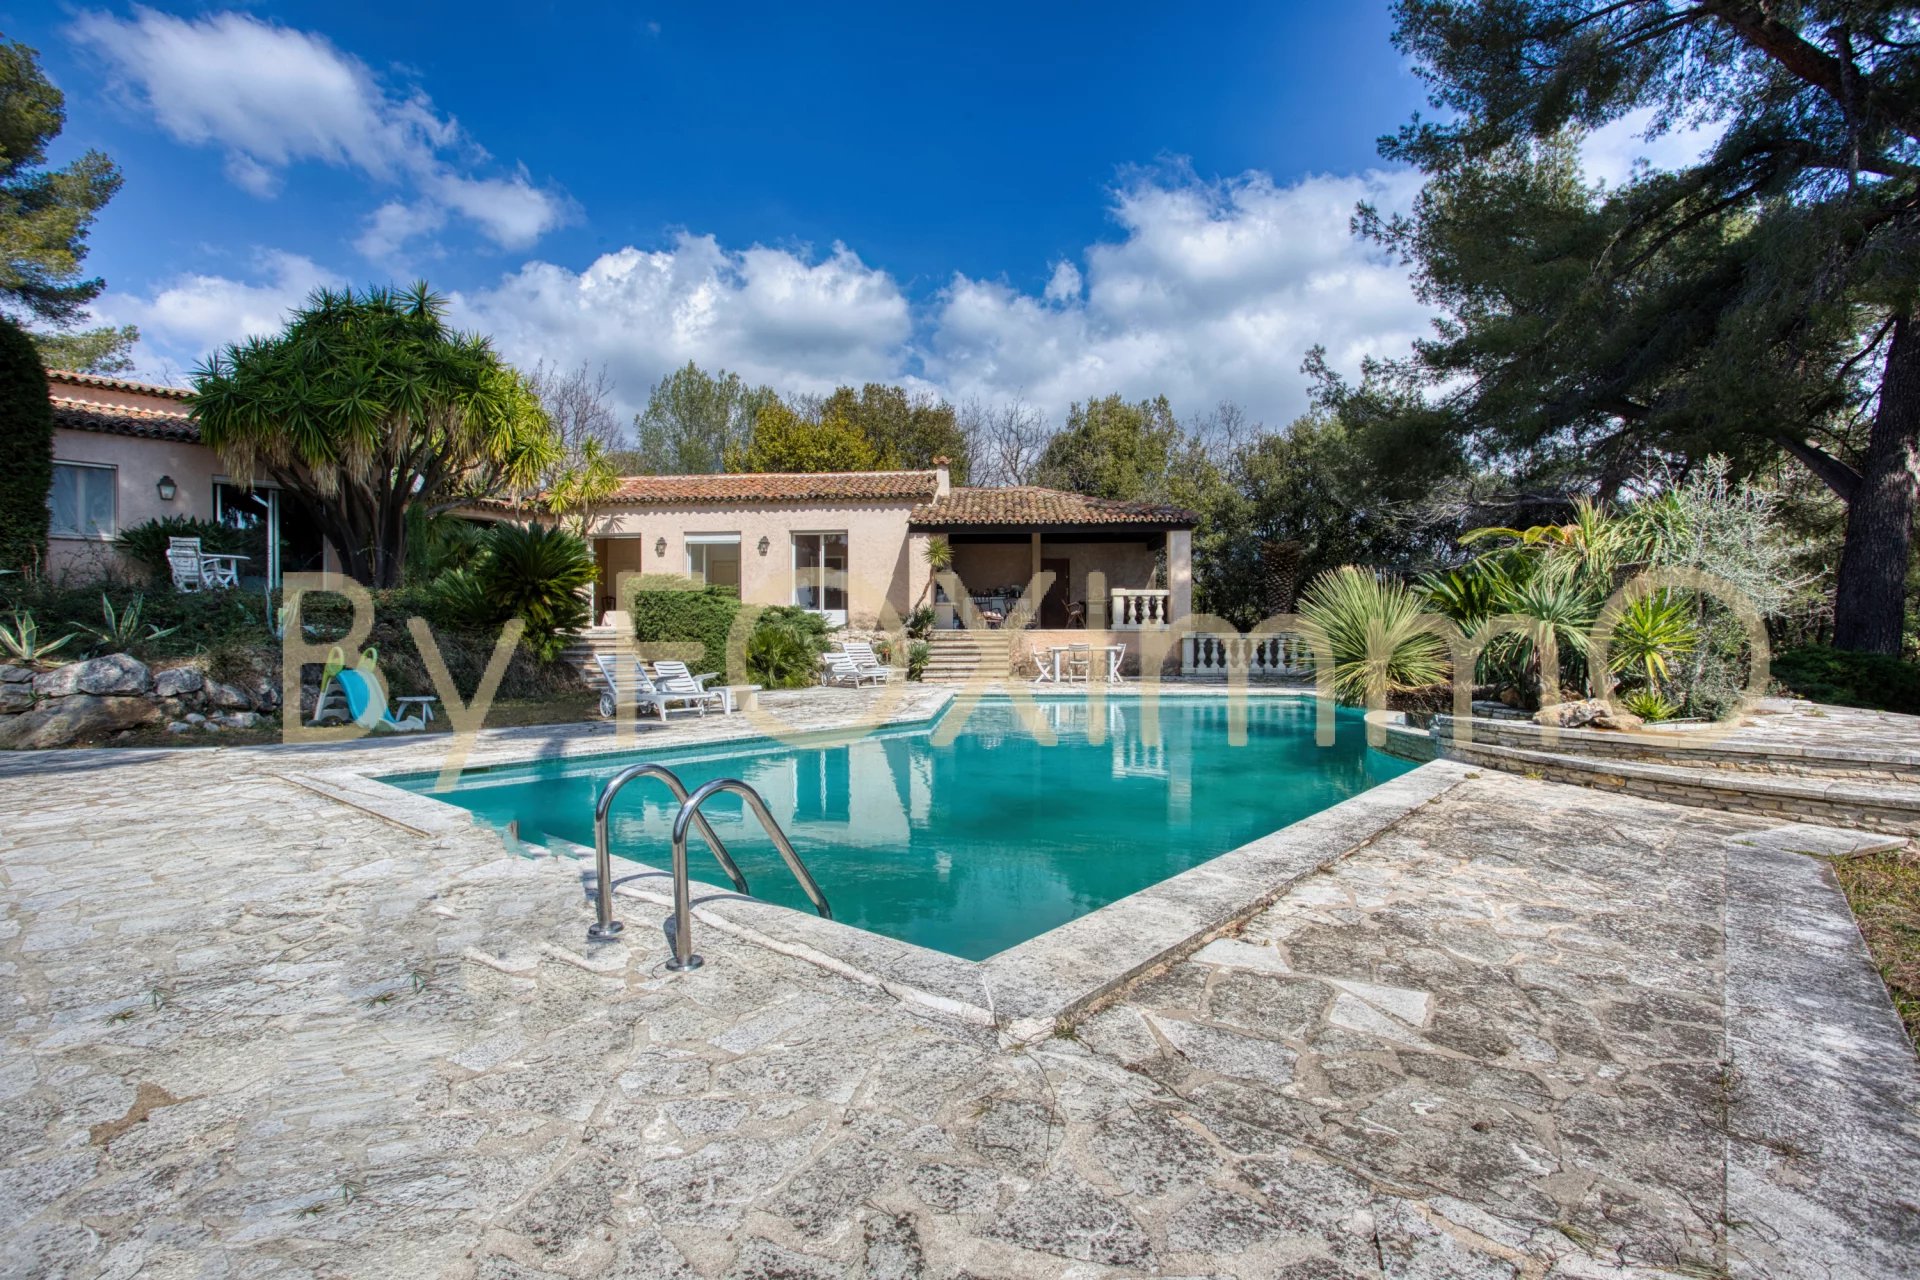 Sur la Côte d'Azur, au calme, grande propriété de plain pied, ,piscine, terrasses, parking, garage, position dominante